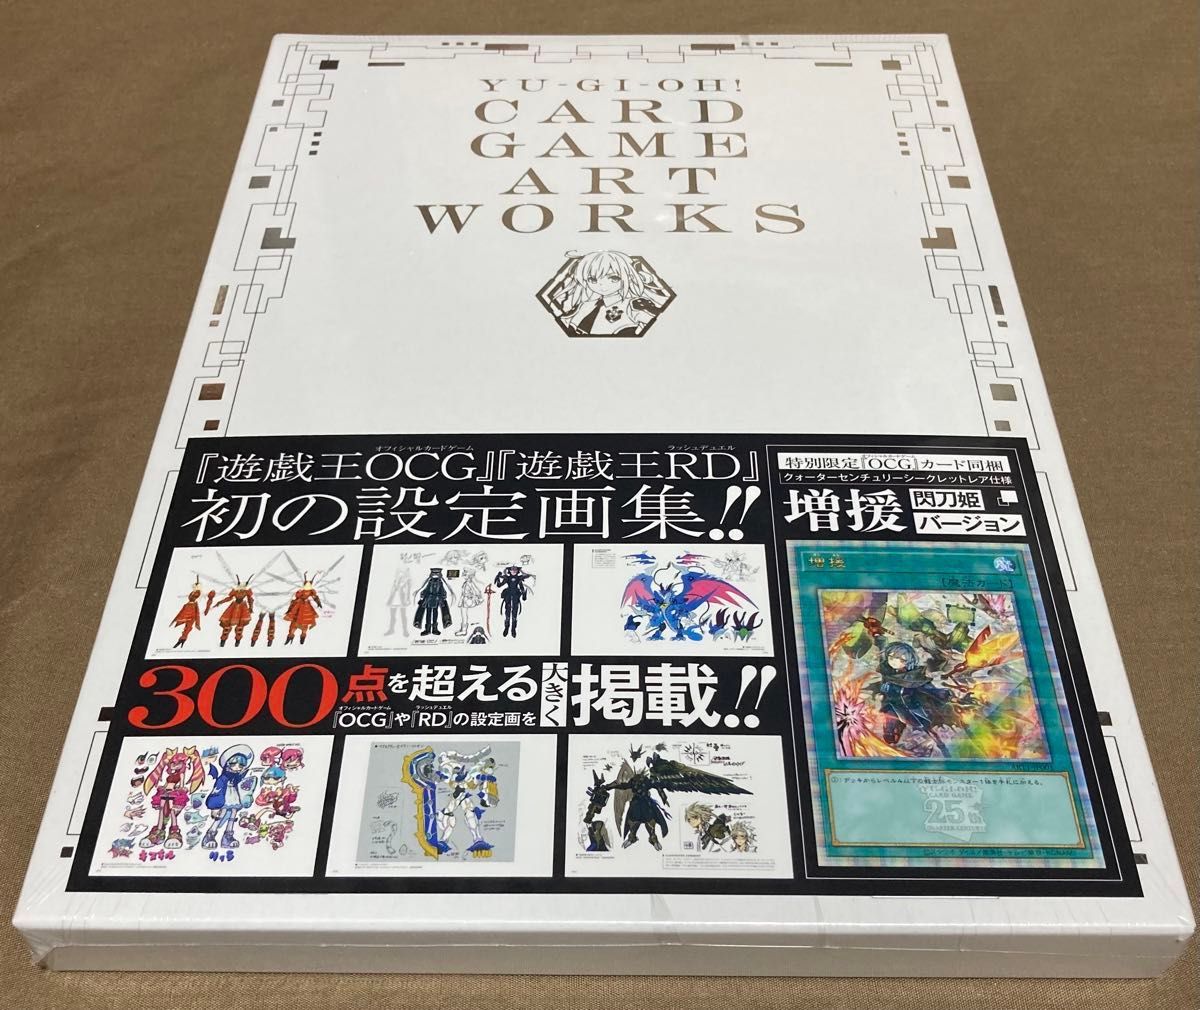 遊戯王 (YU‐GI‐OH CARD GAME ART WORKS) 増援 25th 閃刀姫  アートワークス【新品未開封】